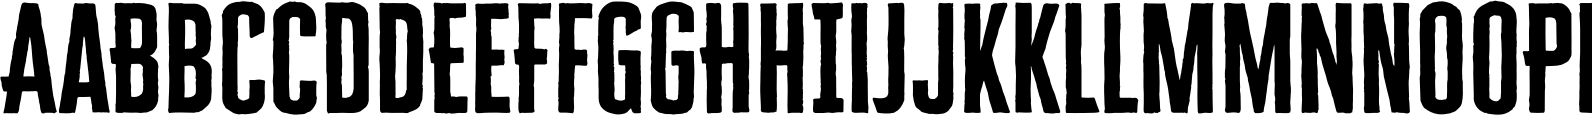 Cheddar Gothic Sans Two Bold